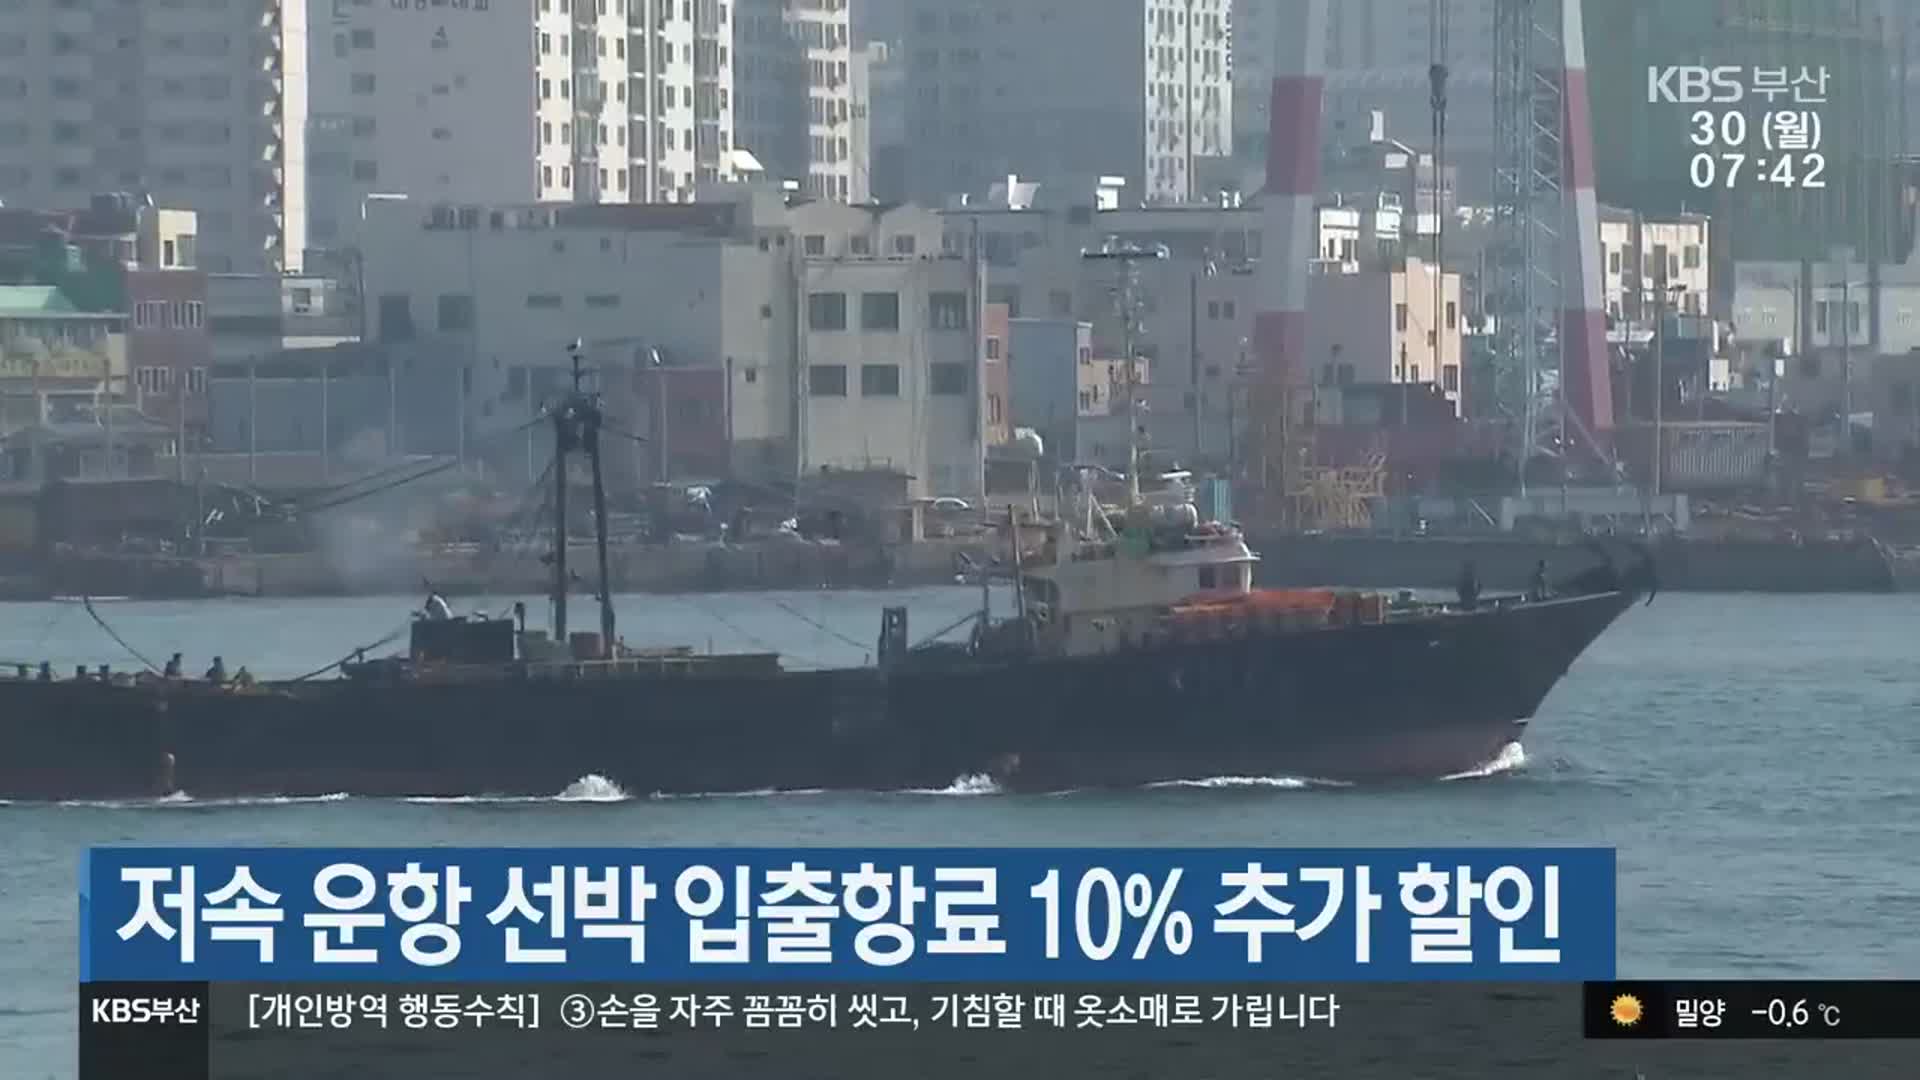 저속 운항 선박 입출항료 10% 추가 할인